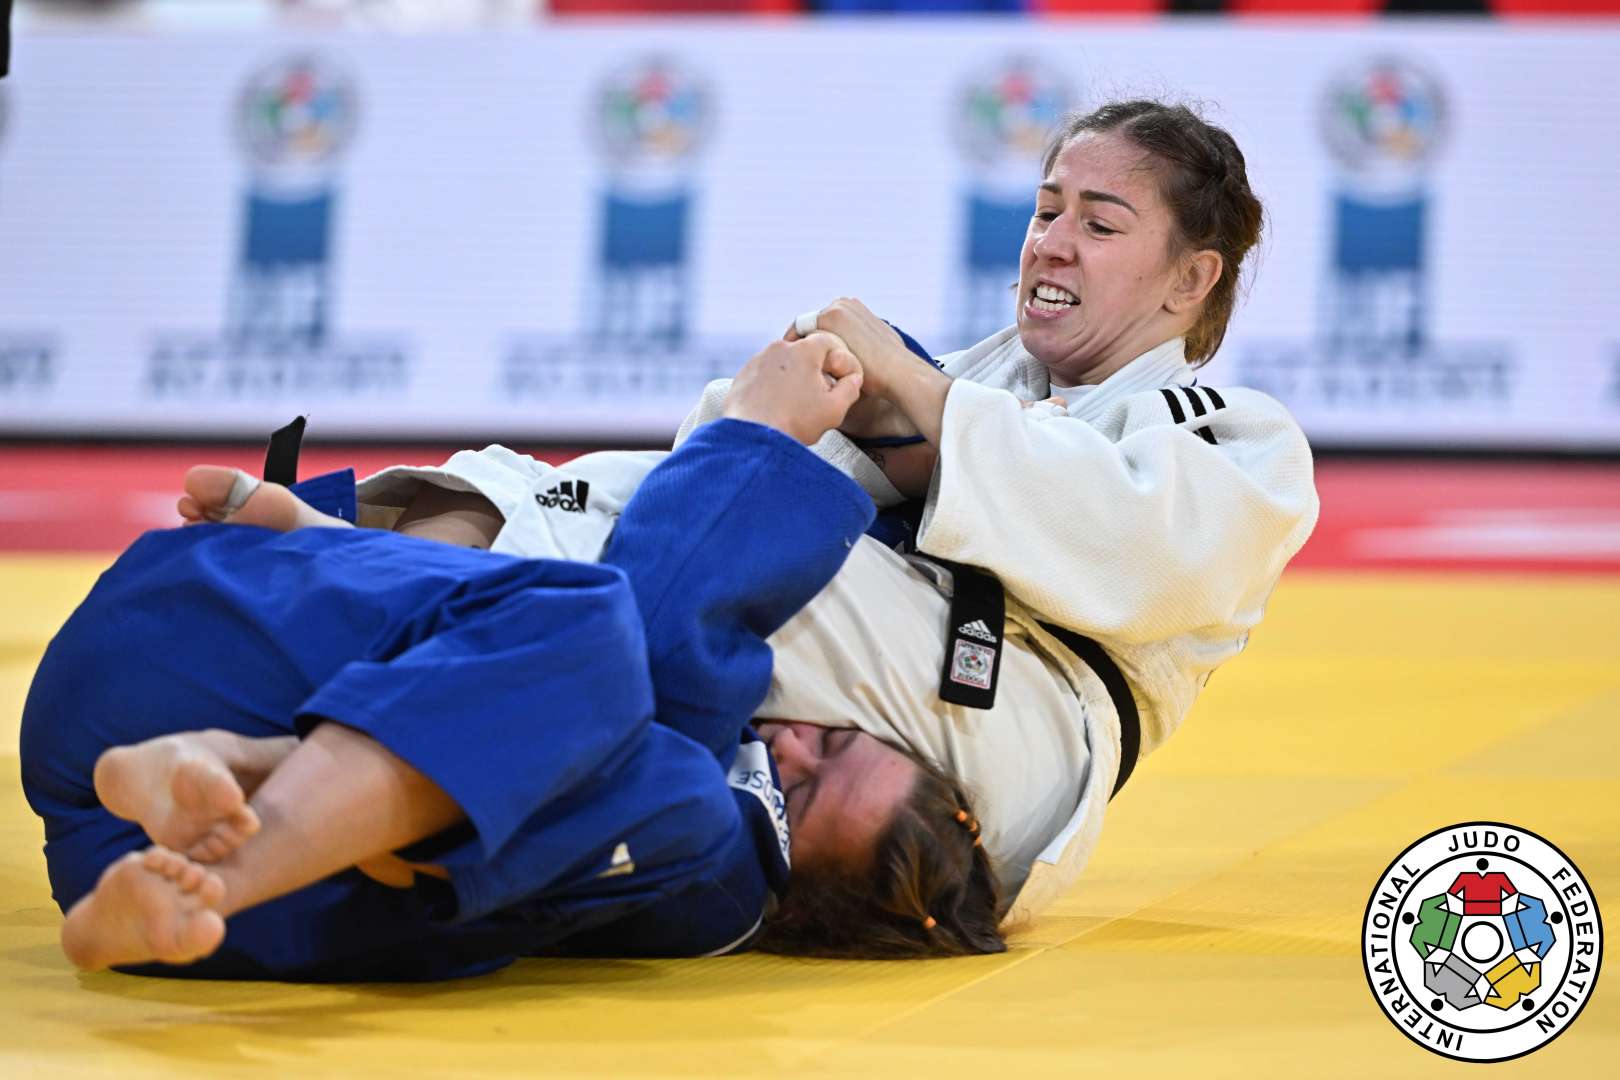 Deux athlètes en judo combattent sur le tatami.